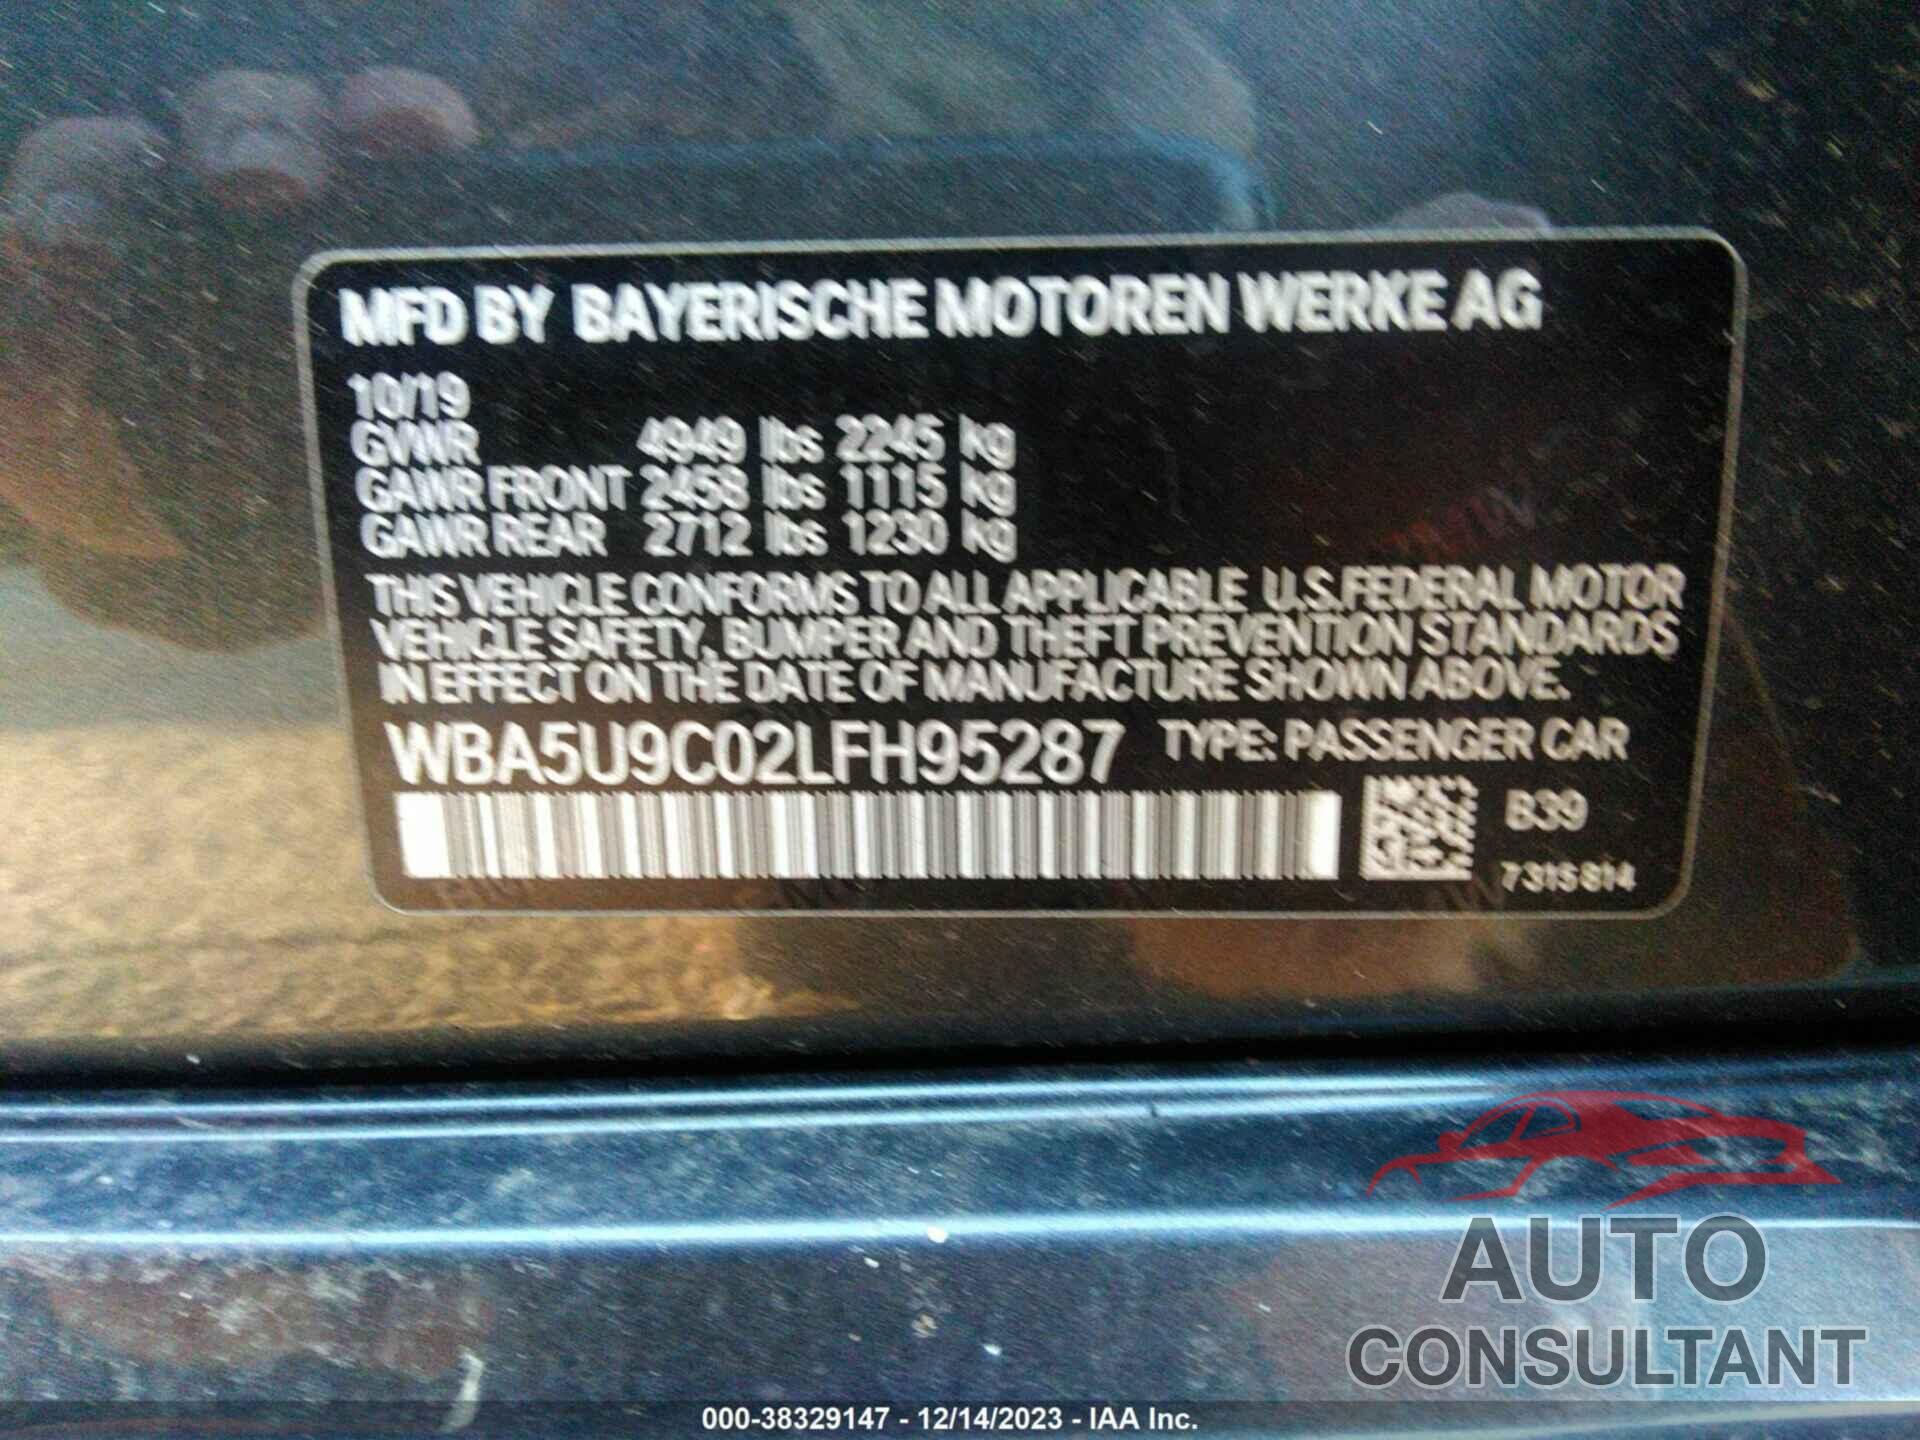 BMW 3 SERIES 2020 - WBA5U9C02LFH95287